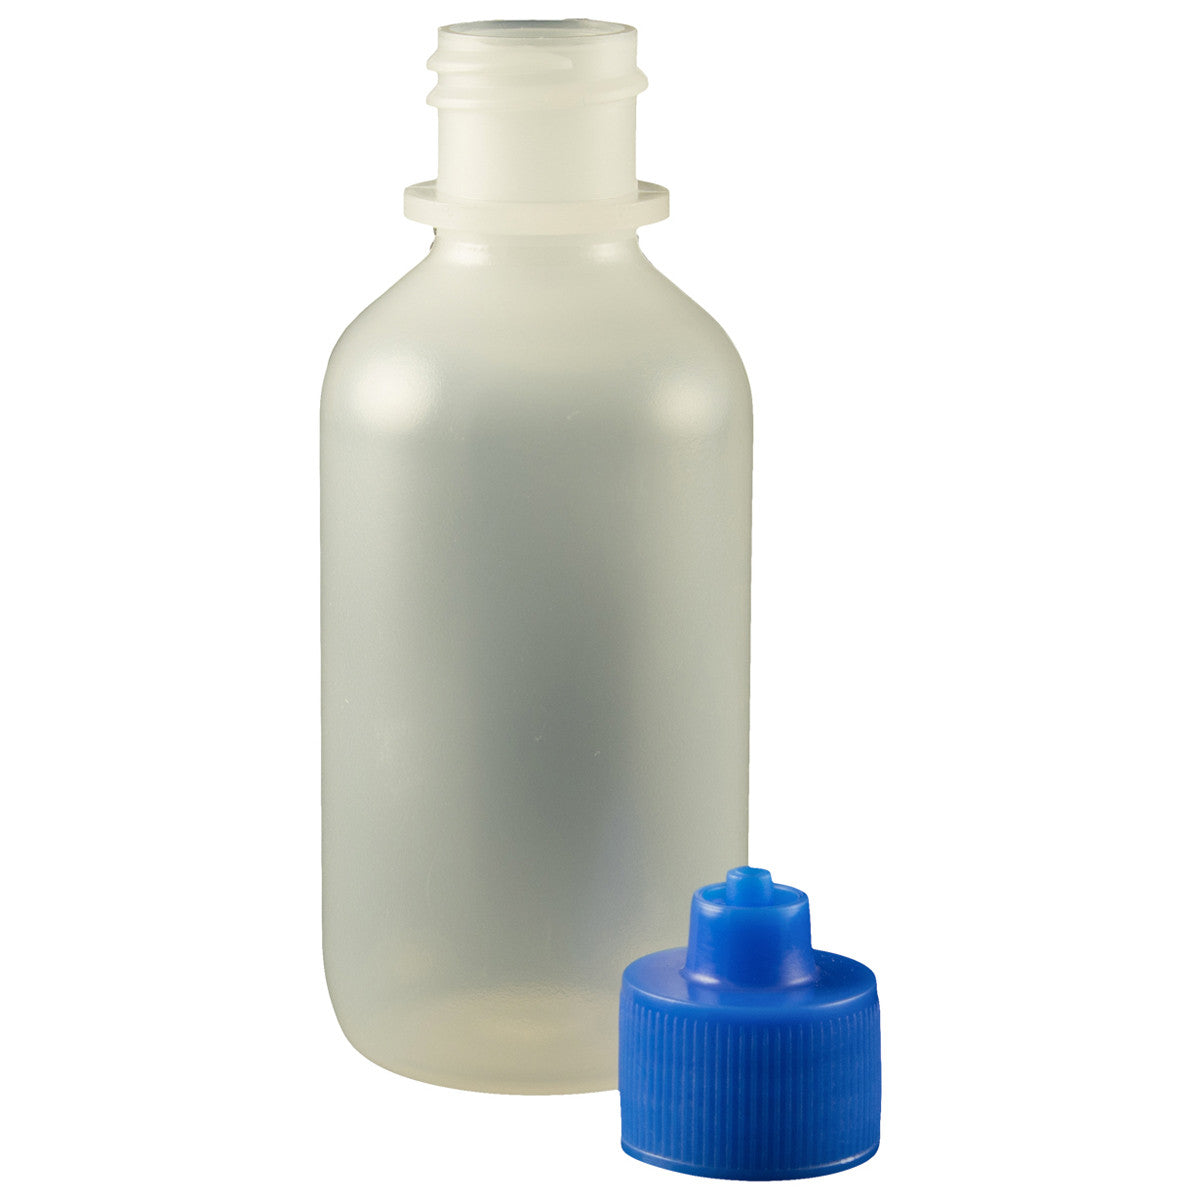 Water Bottle - Light Blue, White Cap